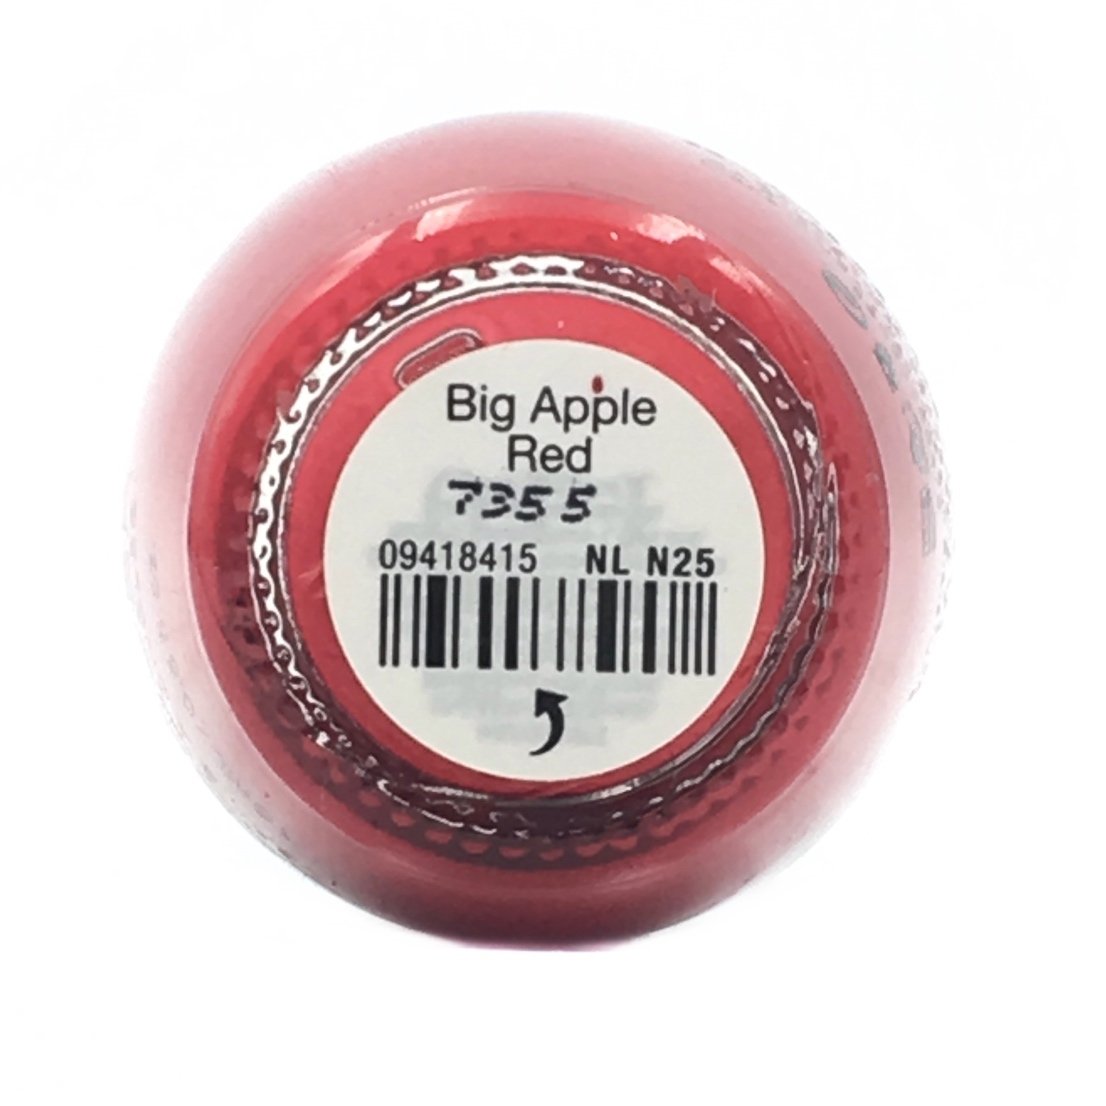 OPI Big Apple Red Nail Polish